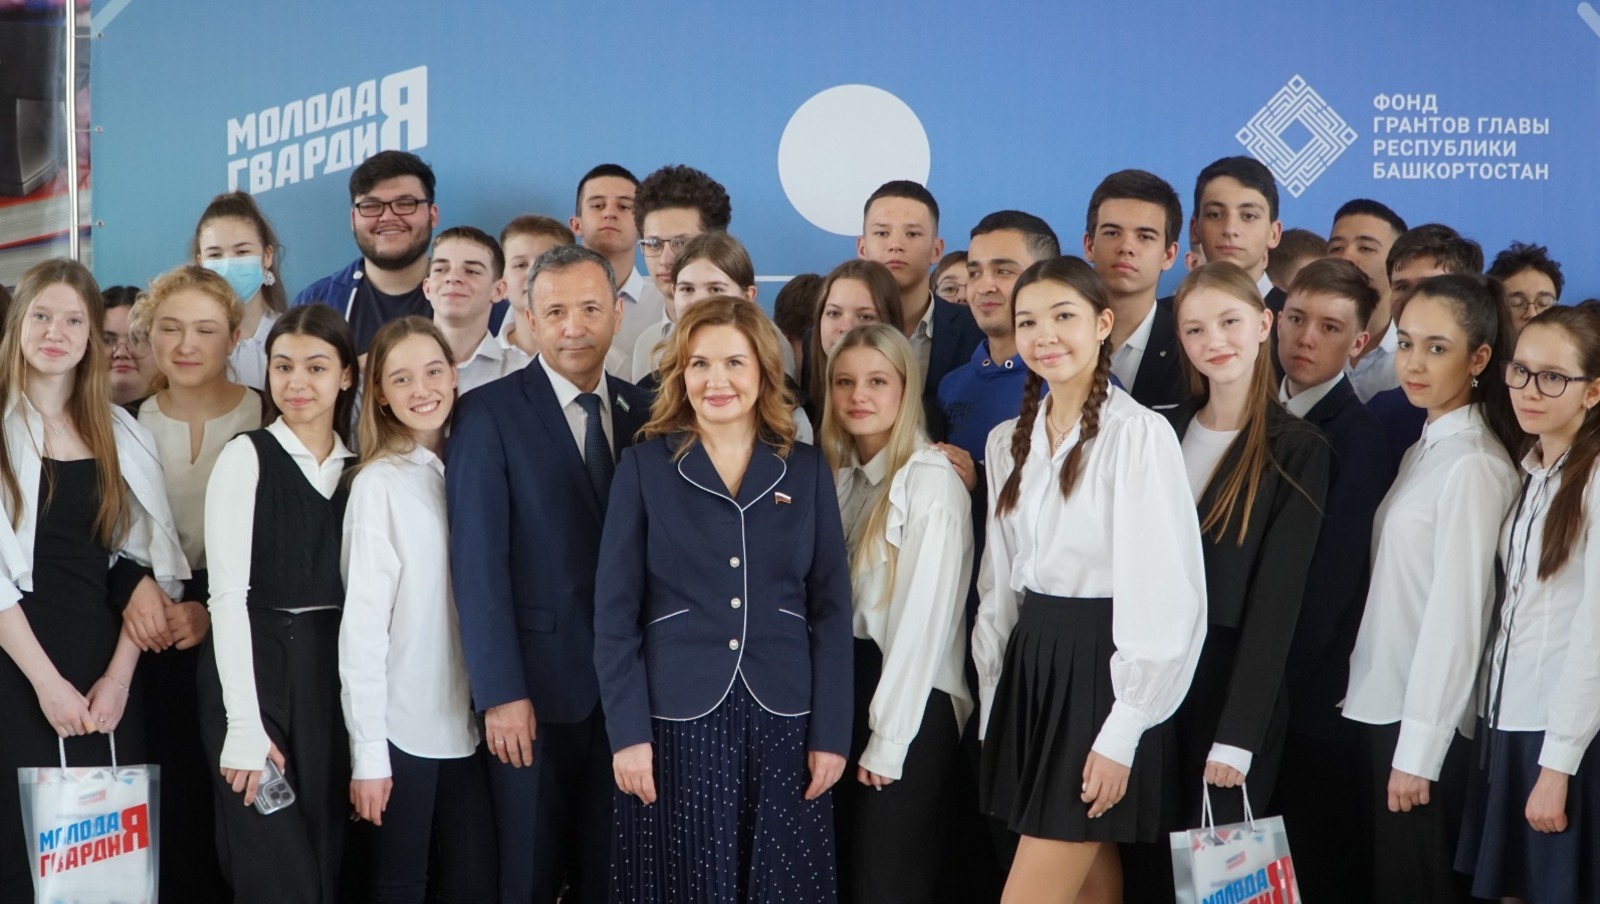 Наталья Орлова сообщила о планах по расширению проекта по профориентации школьников в Башкирии